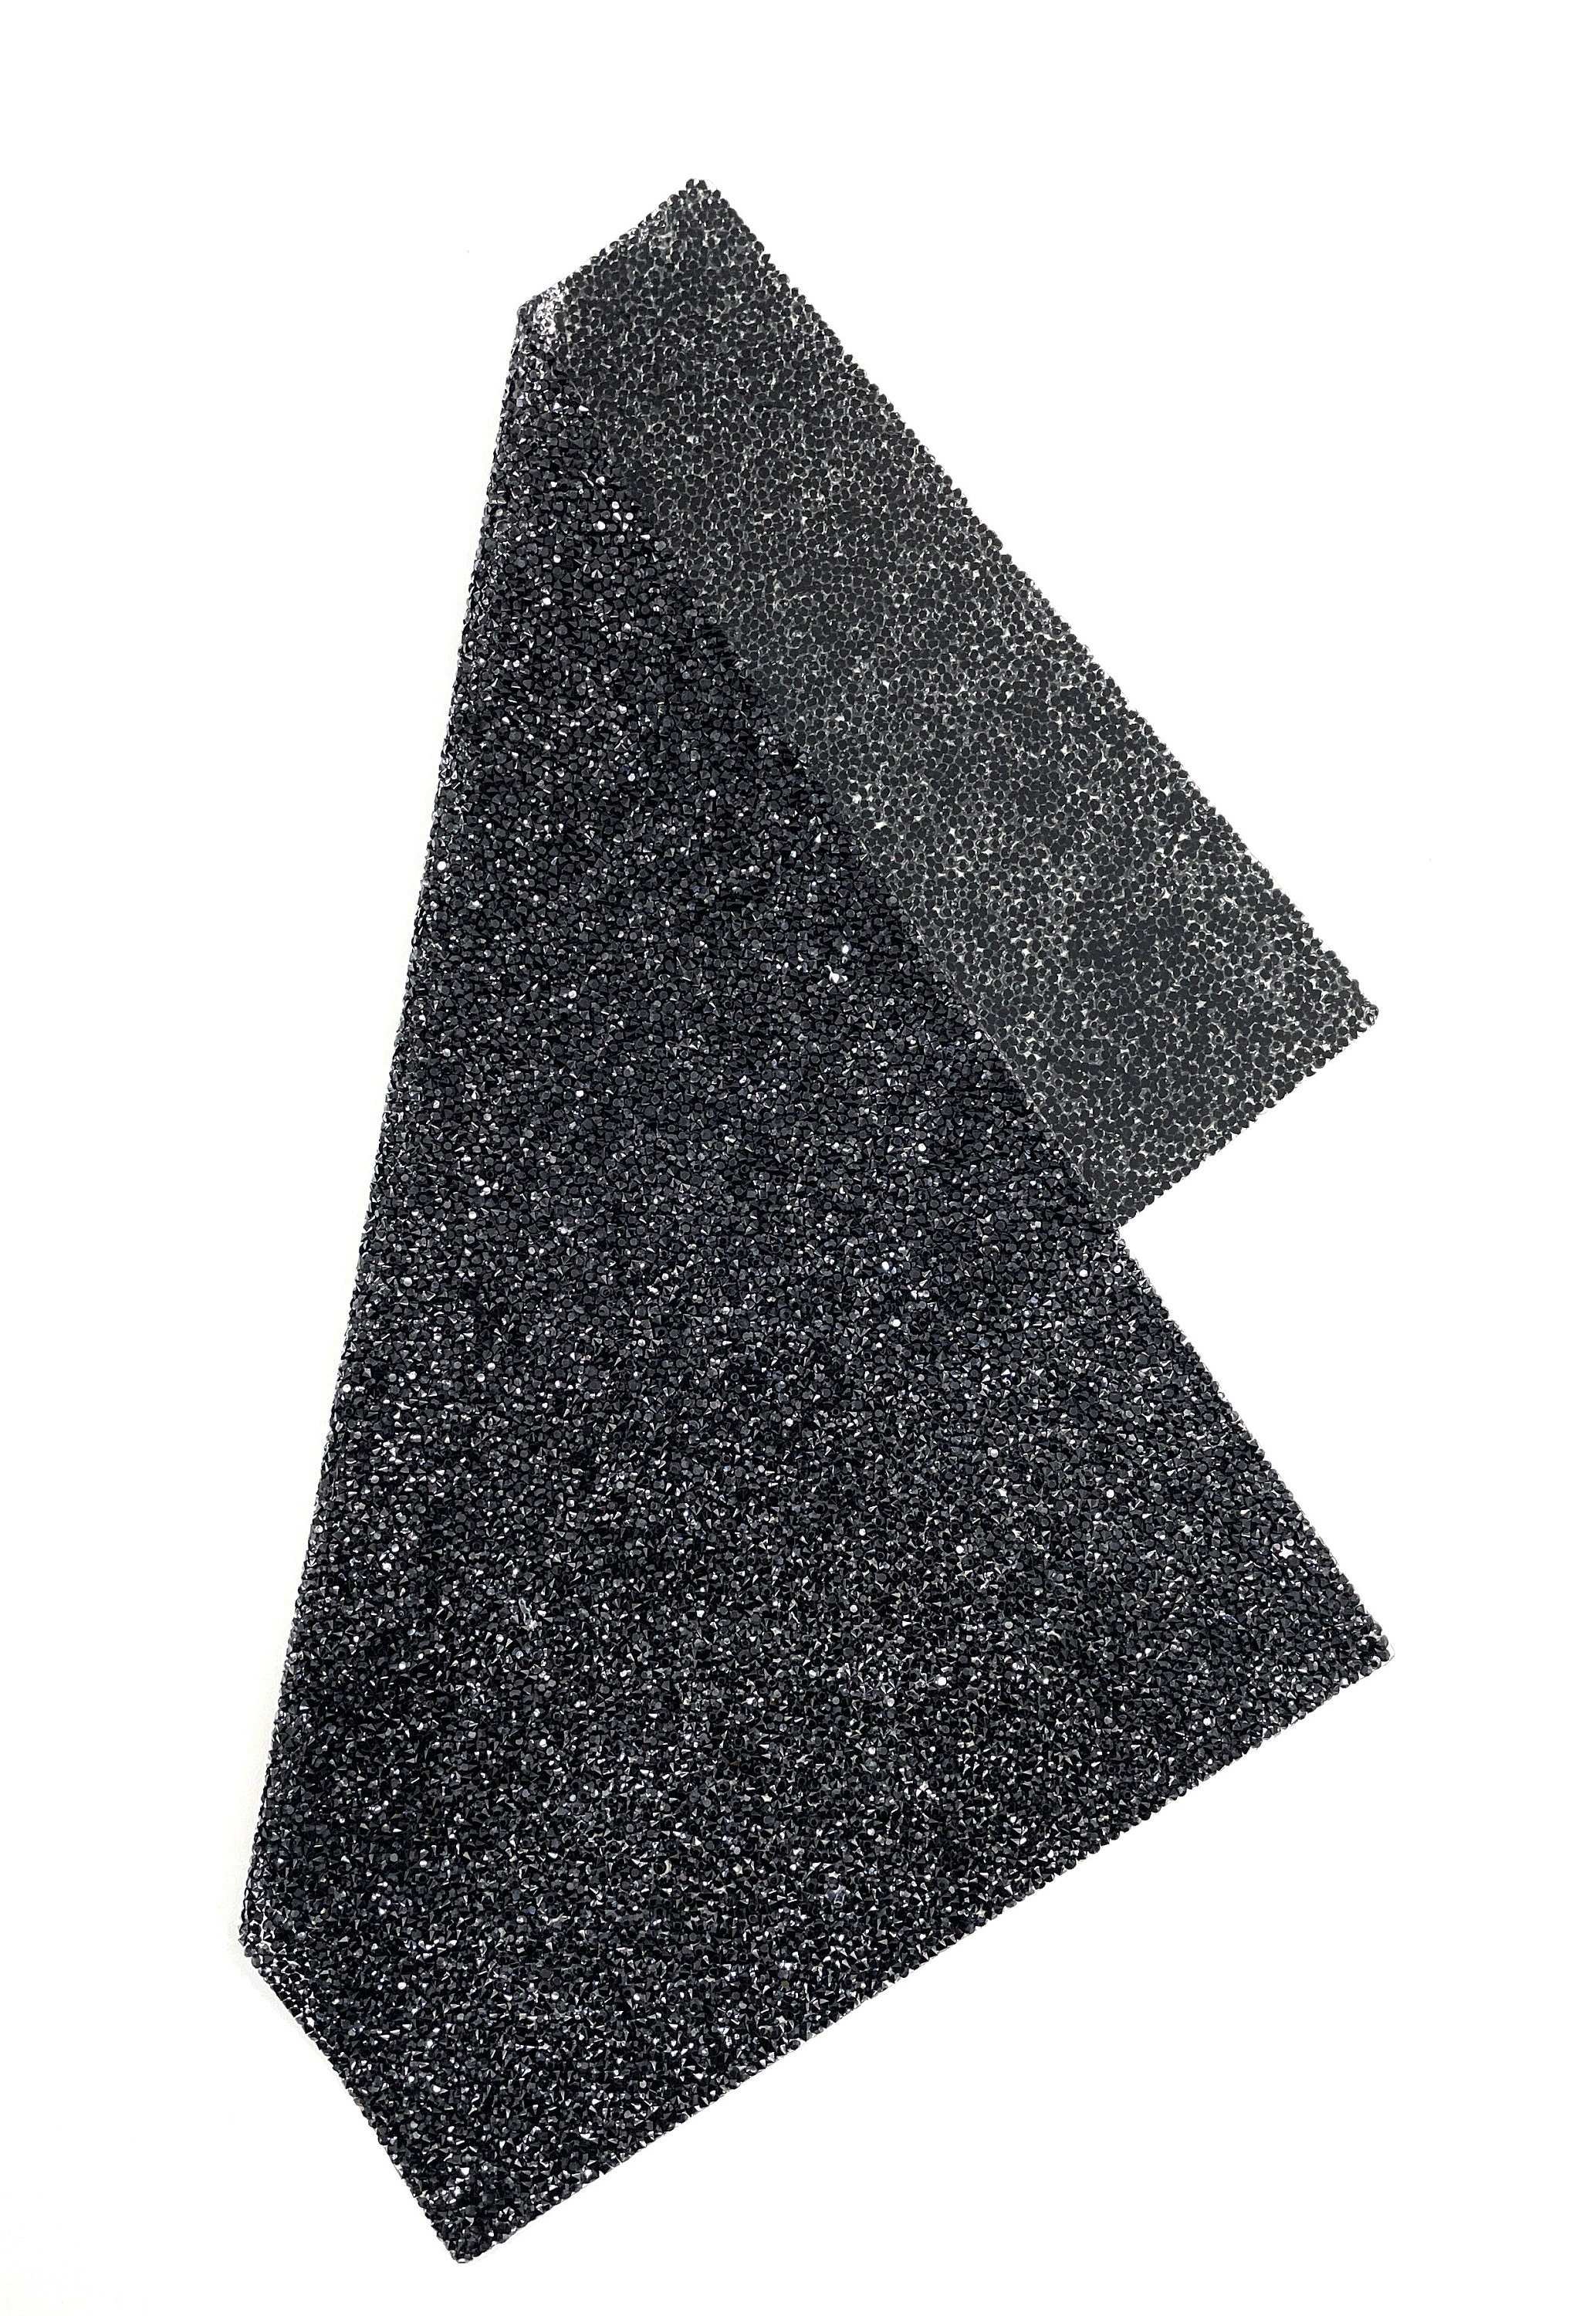 Black / Crystal Clear Stretchable Rhinestone X Fabric 